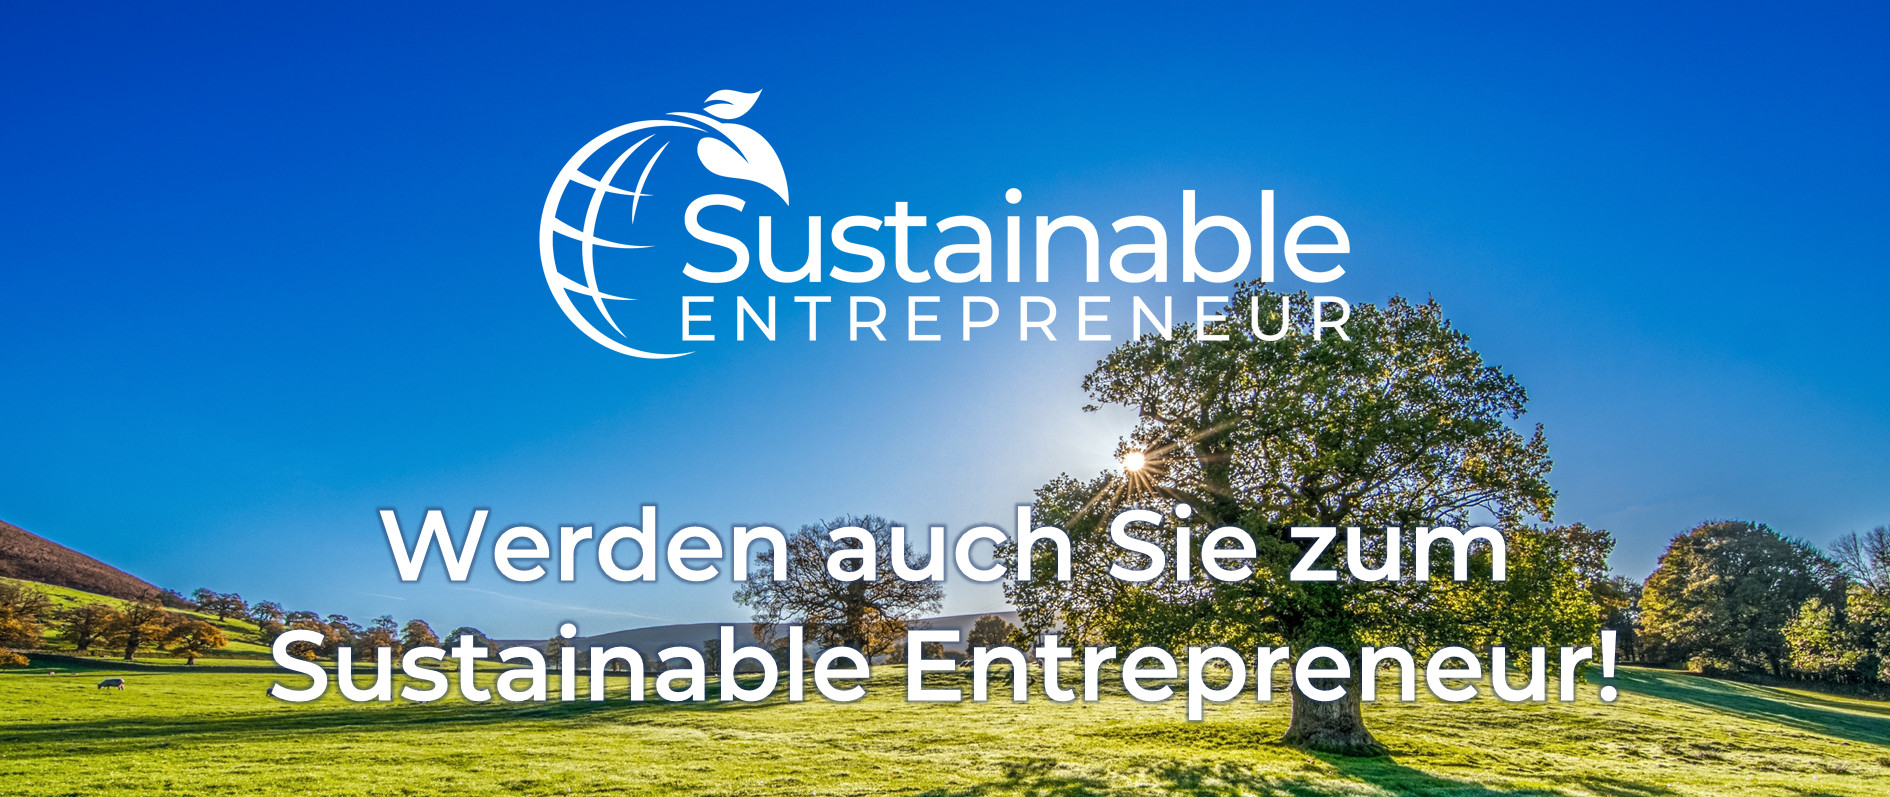 Sustainable Entrepreneur Werden auch Sie zum SE